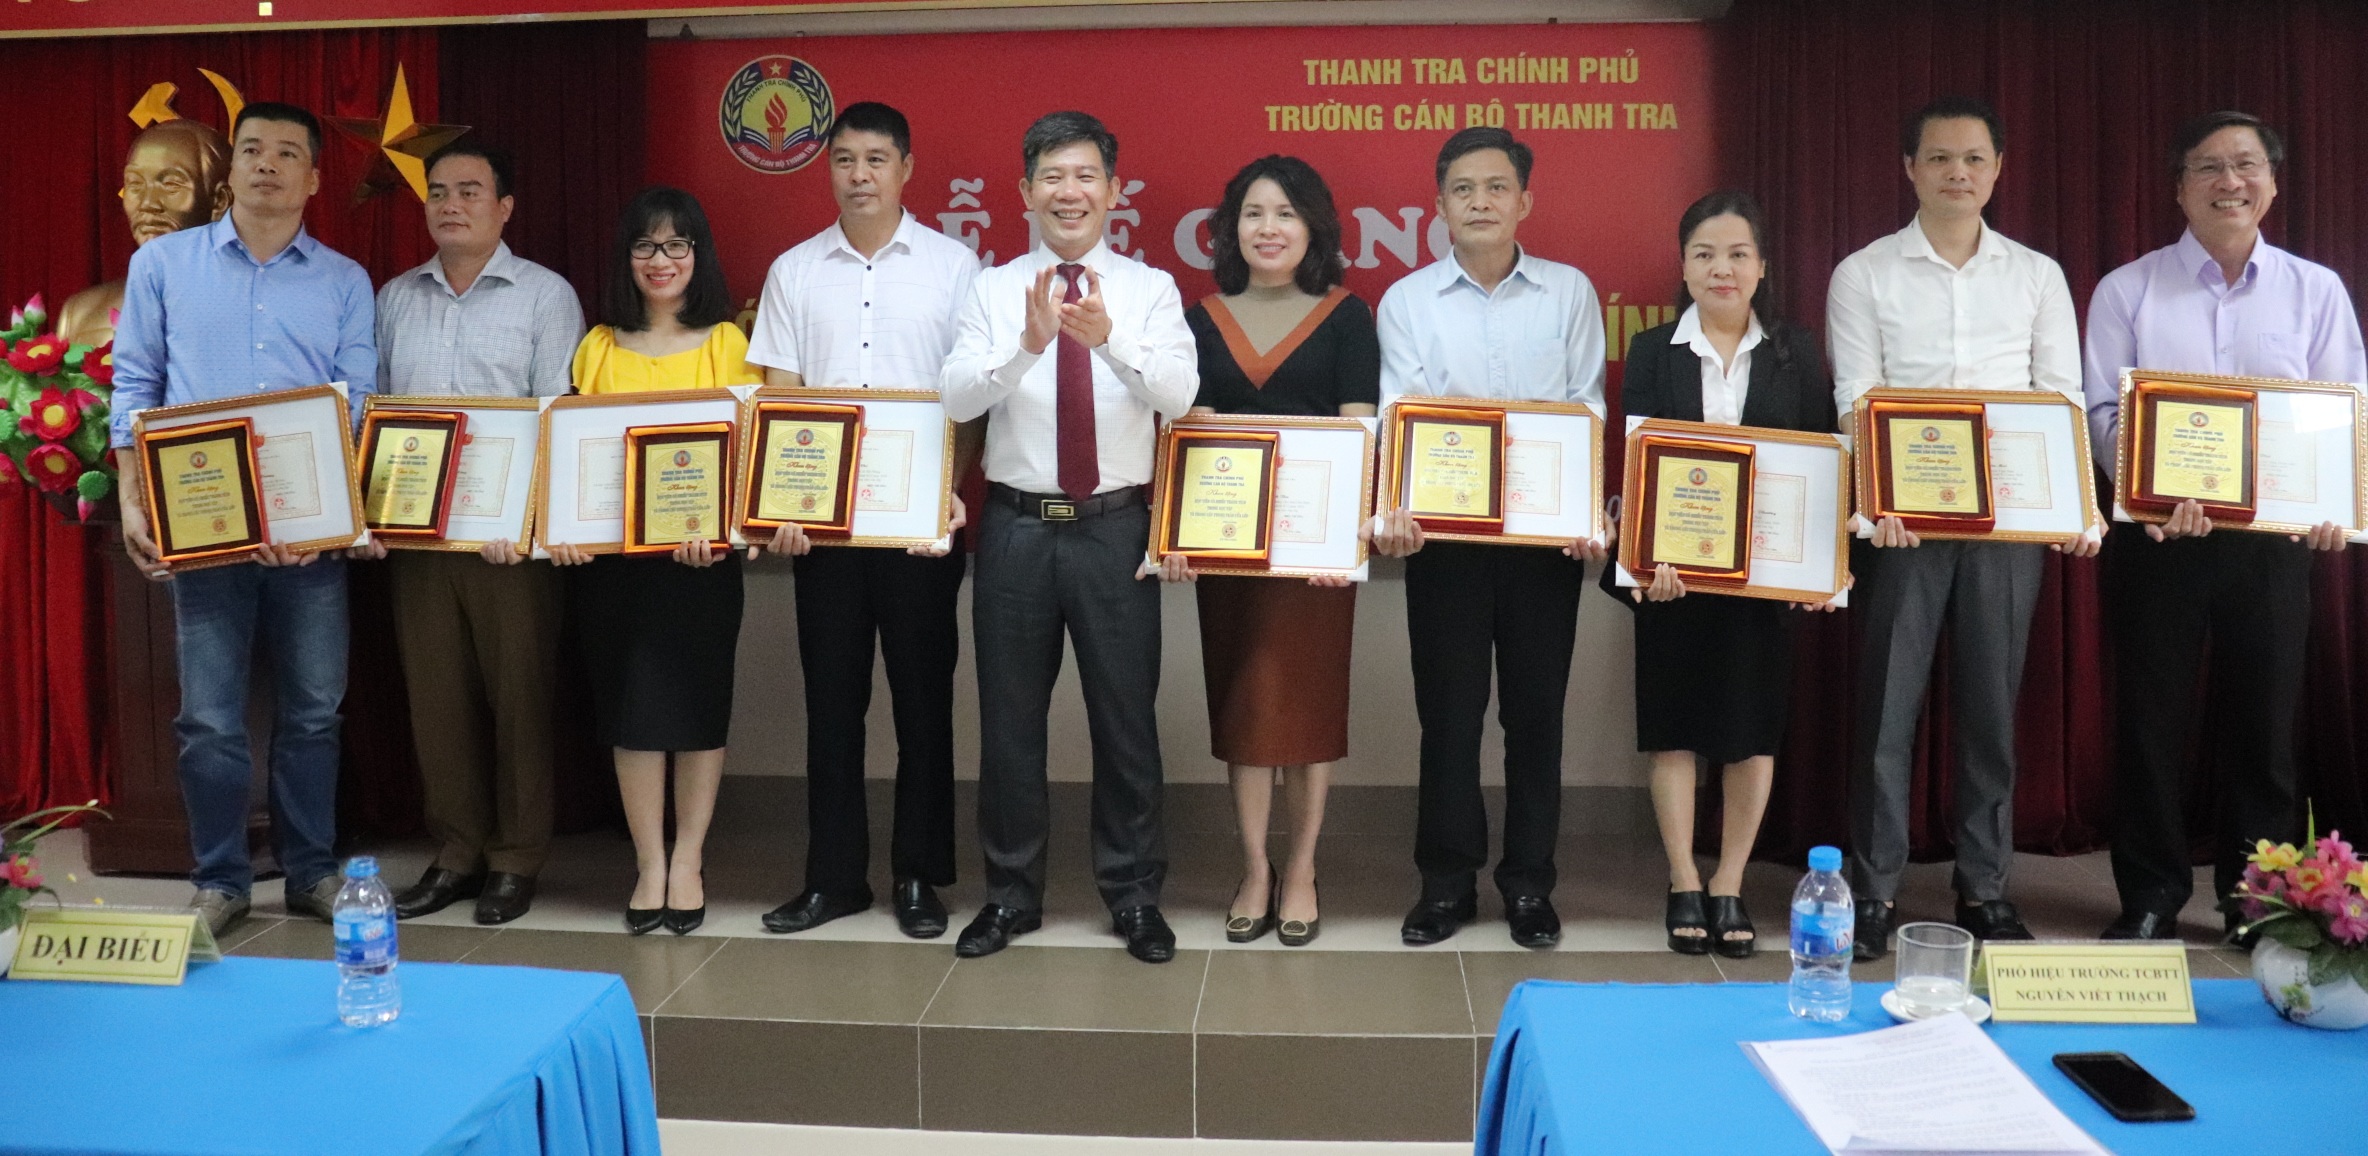 Ông Nguyễn Viết Thạch Phó Hiệu trưởng nhà trường trao giấy khen cho học viên